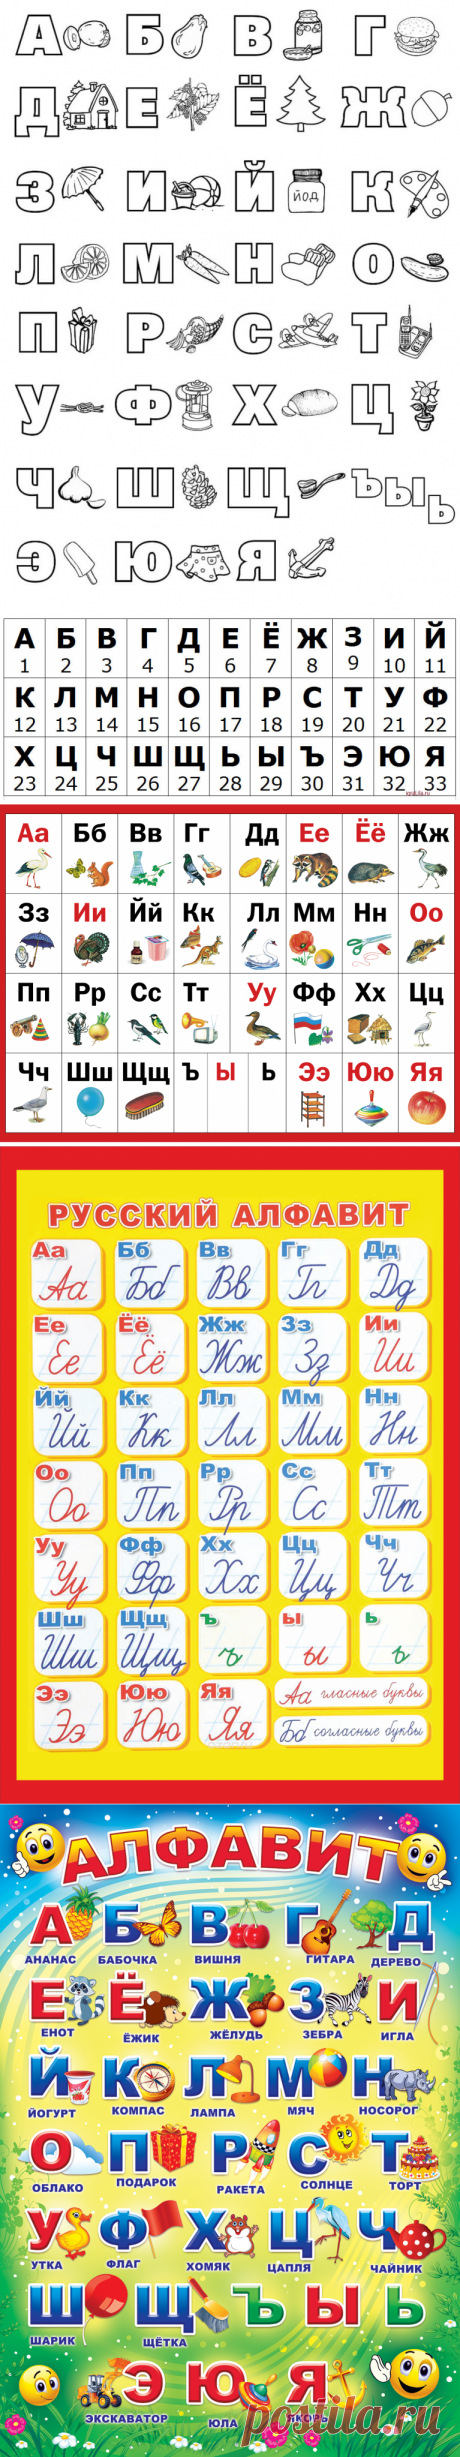 Русский алфавит с картинками  для детей - распечатать, скачать карточки